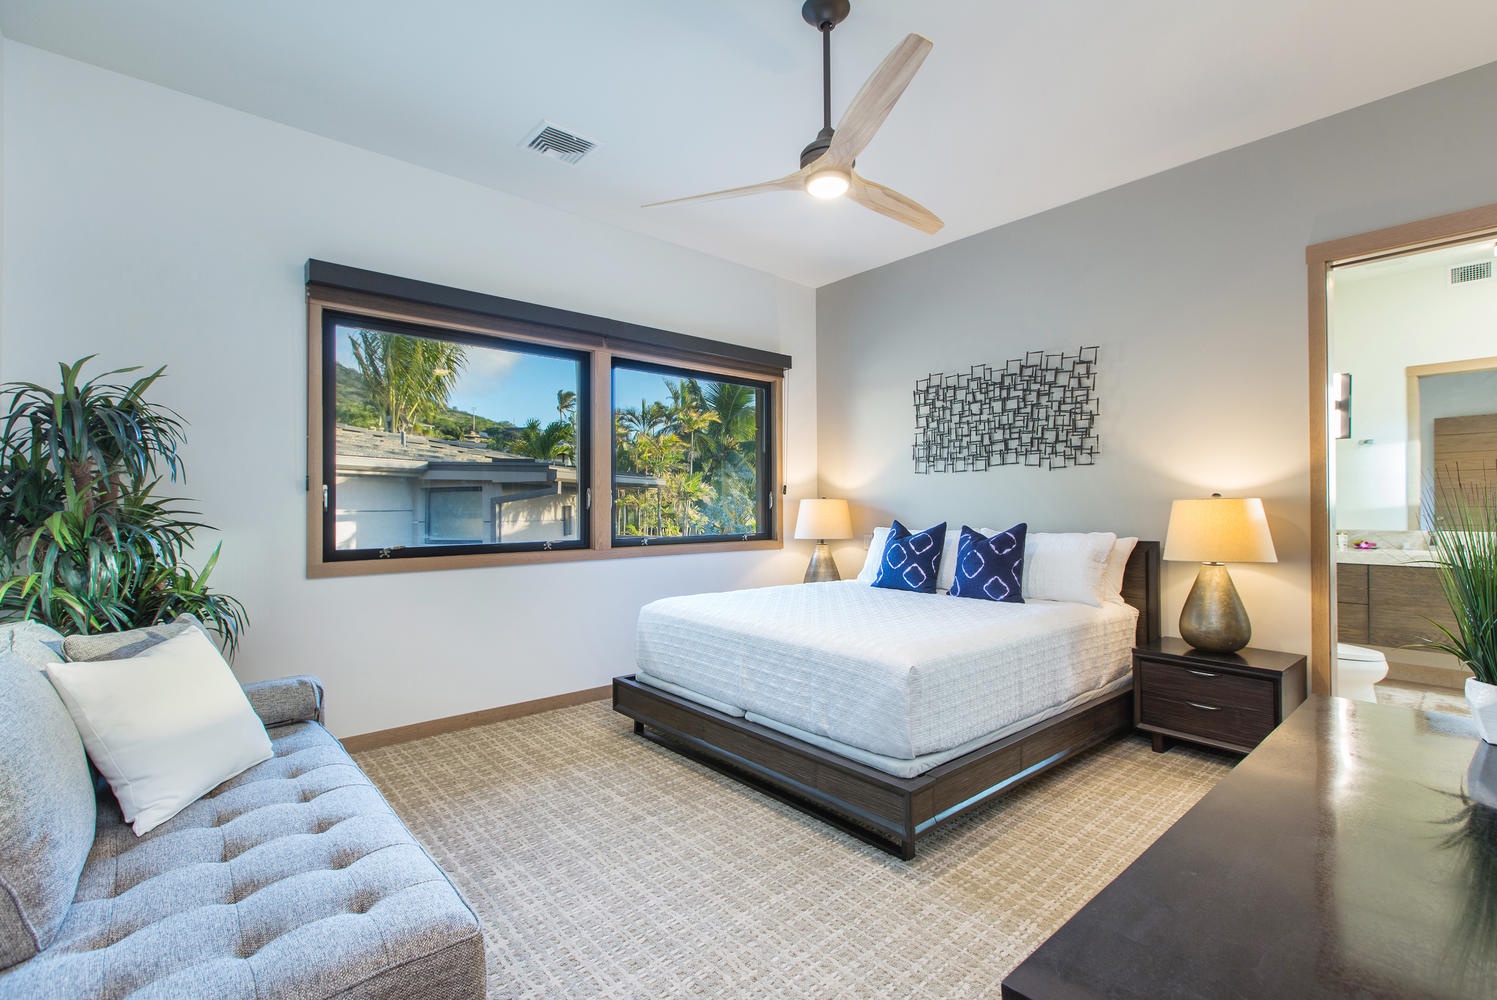 Honolulu Vacation Rentals, Maunalua Bay Estate 4 Bedroom - Upstairs bedroom suite